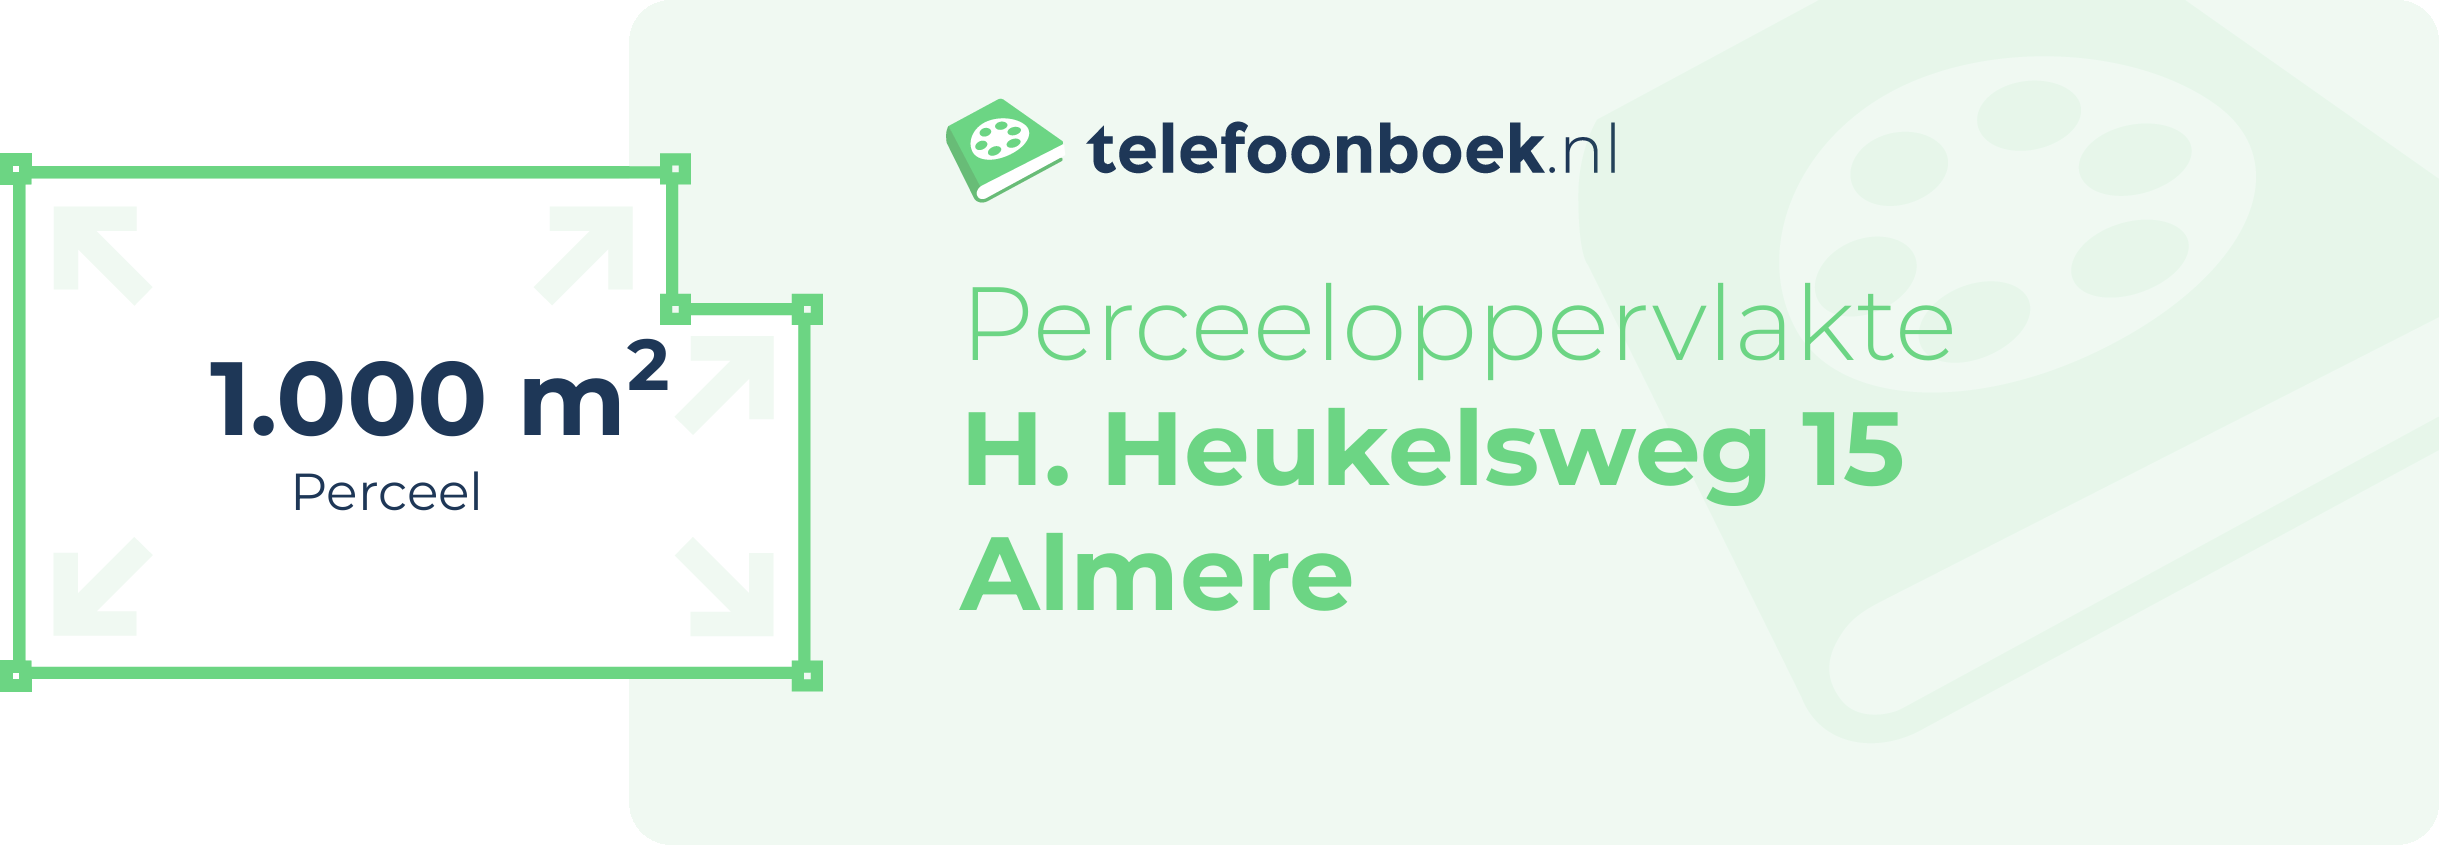 Perceeloppervlakte H. Heukelsweg 15 Almere